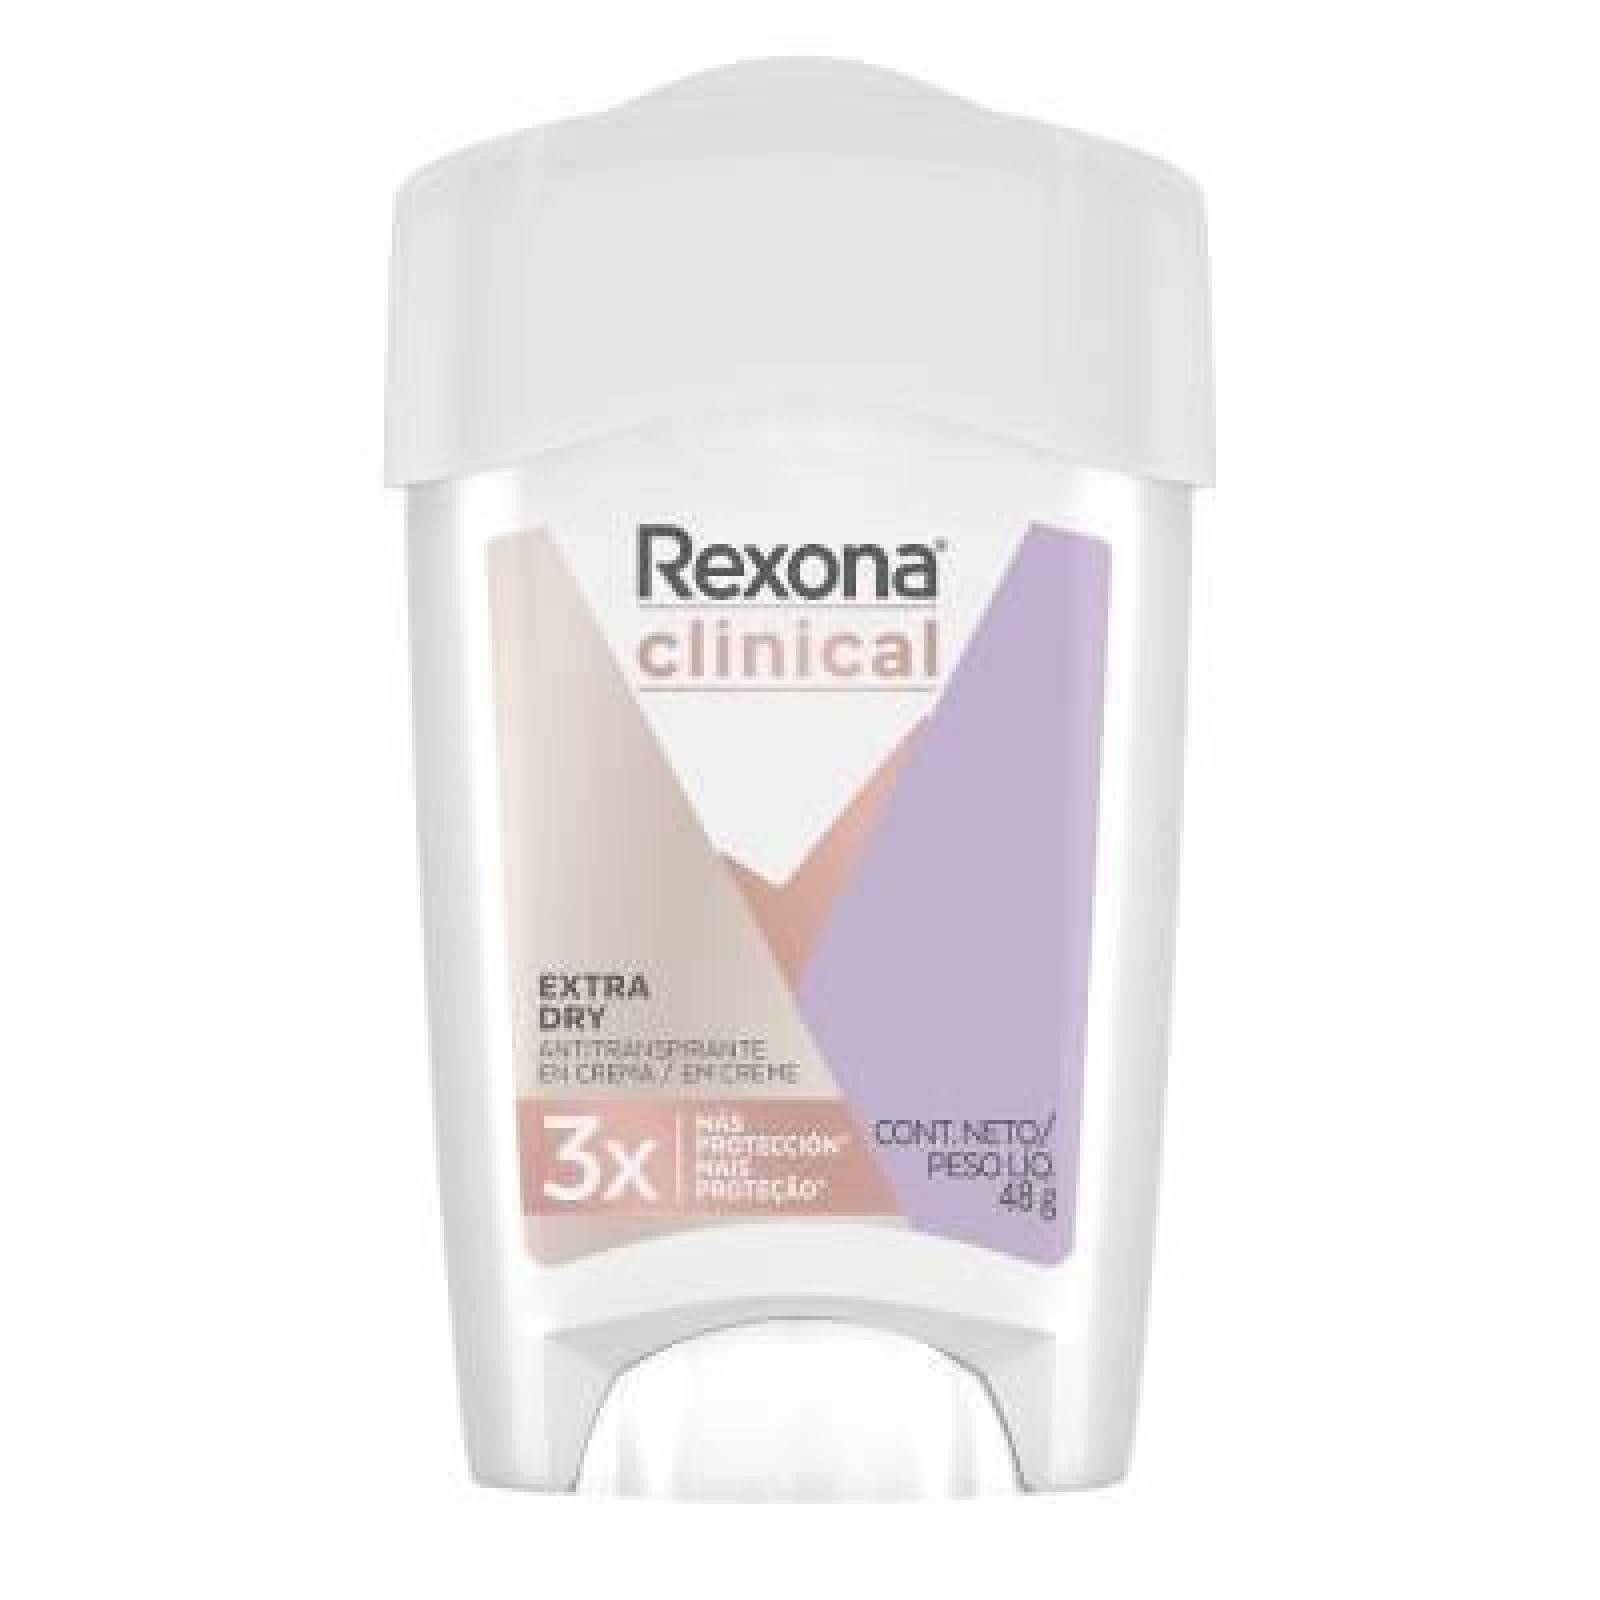 Rexona Antitranspirante en Crema Extra Dry barra 48g 